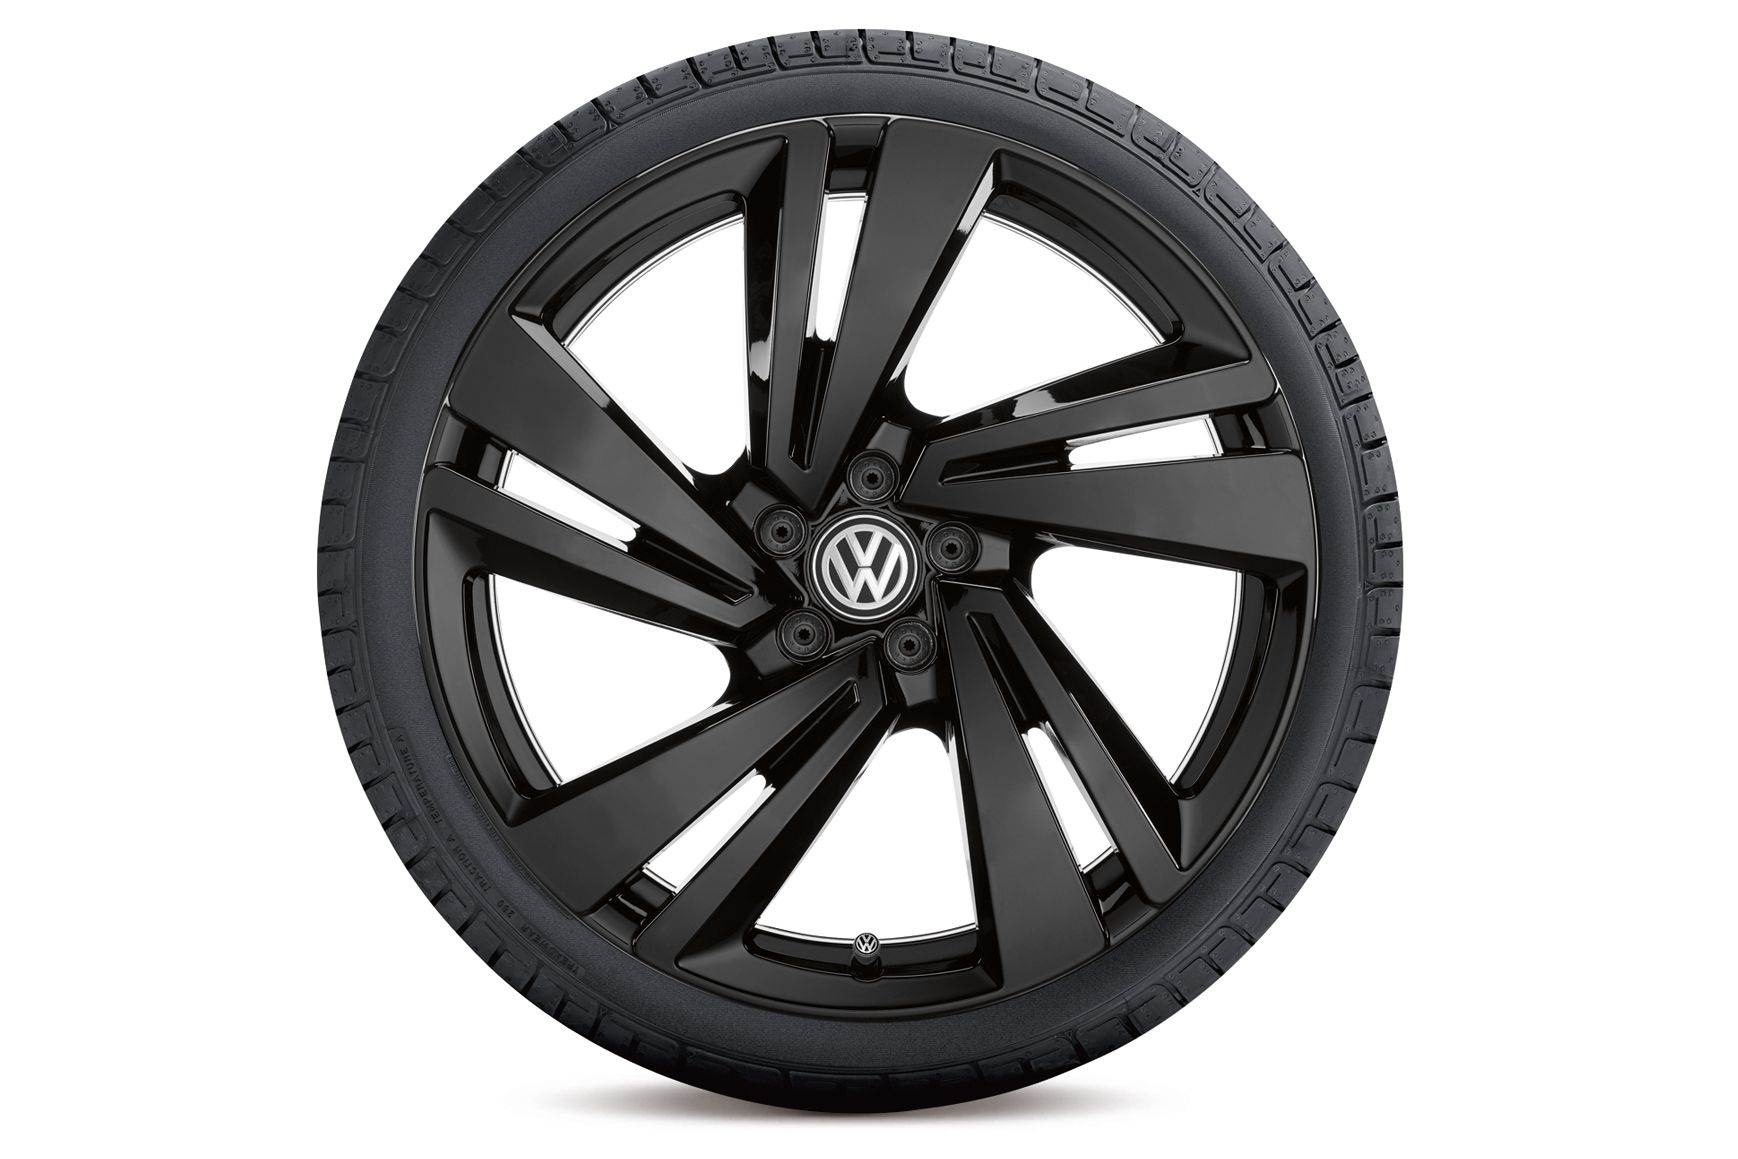 VW Volkswagen Winterkomplettrad Nevada schwarz